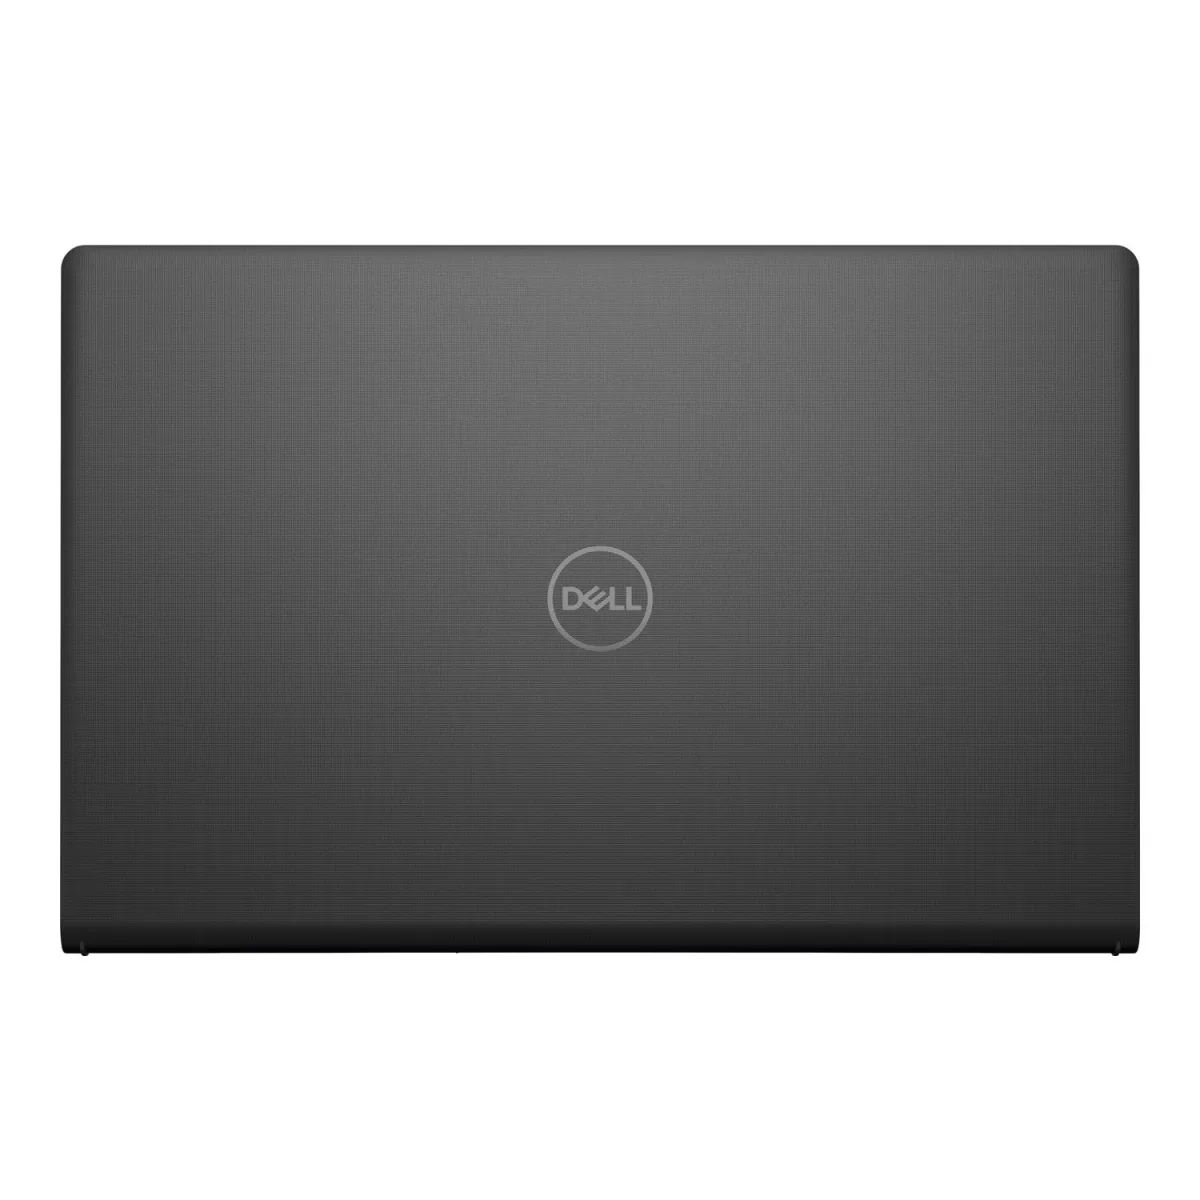 Dell Vostro 3510 Laptop with 15 6 InchI FHD Core i3 1115